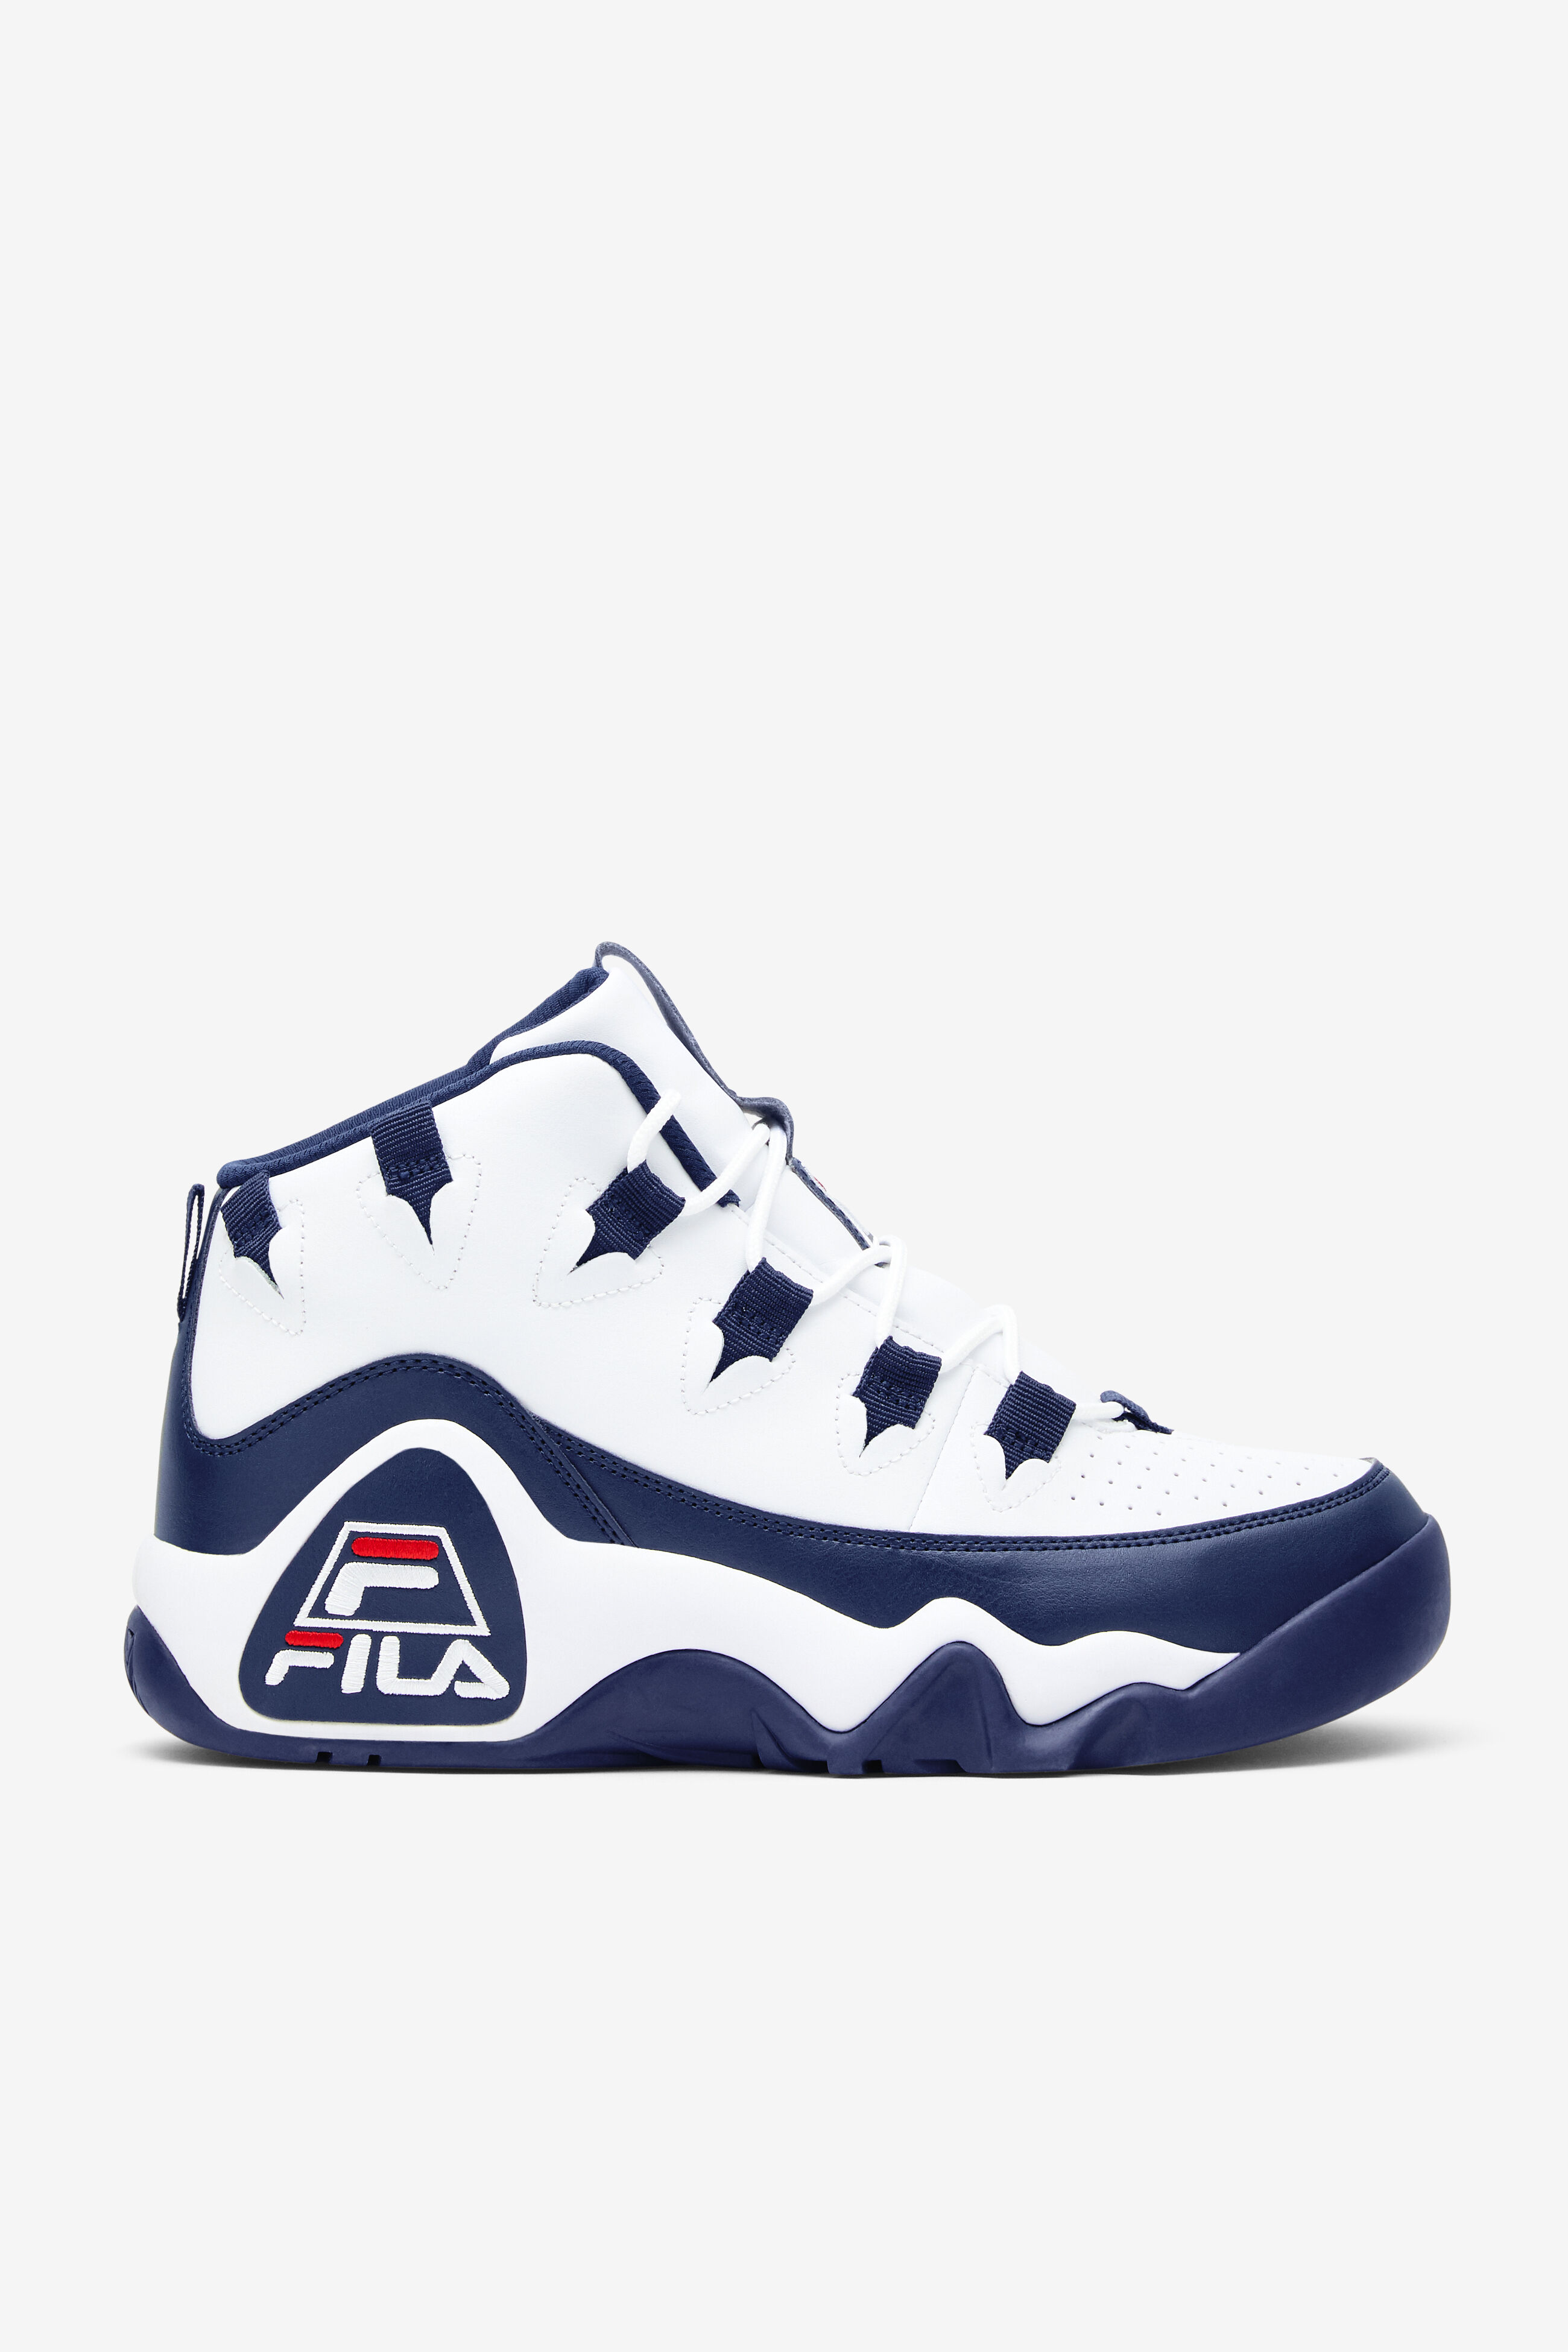 Men's Grant Hill 1 Basketball Shoe | Fila 1BM00636